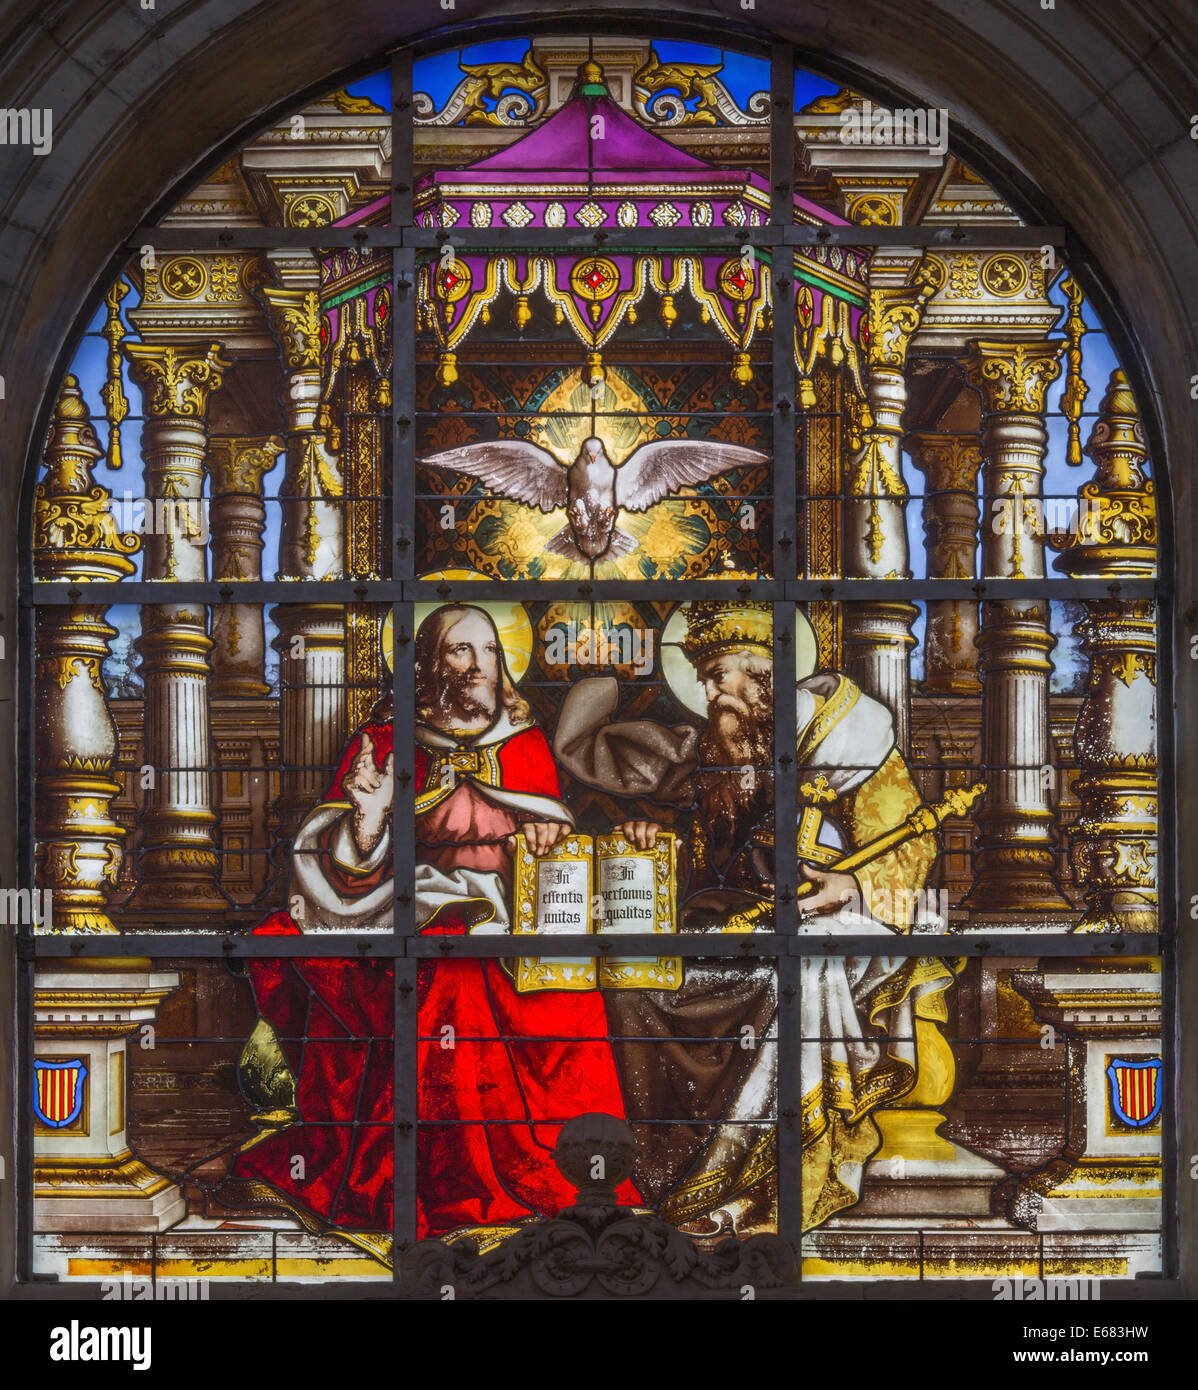 Bruxelles, Belgio - 16 giugno 2014: la Santissima Trinità sul windwopane dal 19. secolo nella Cattedrale di st. Michael e st. Gudula. Foto Stock